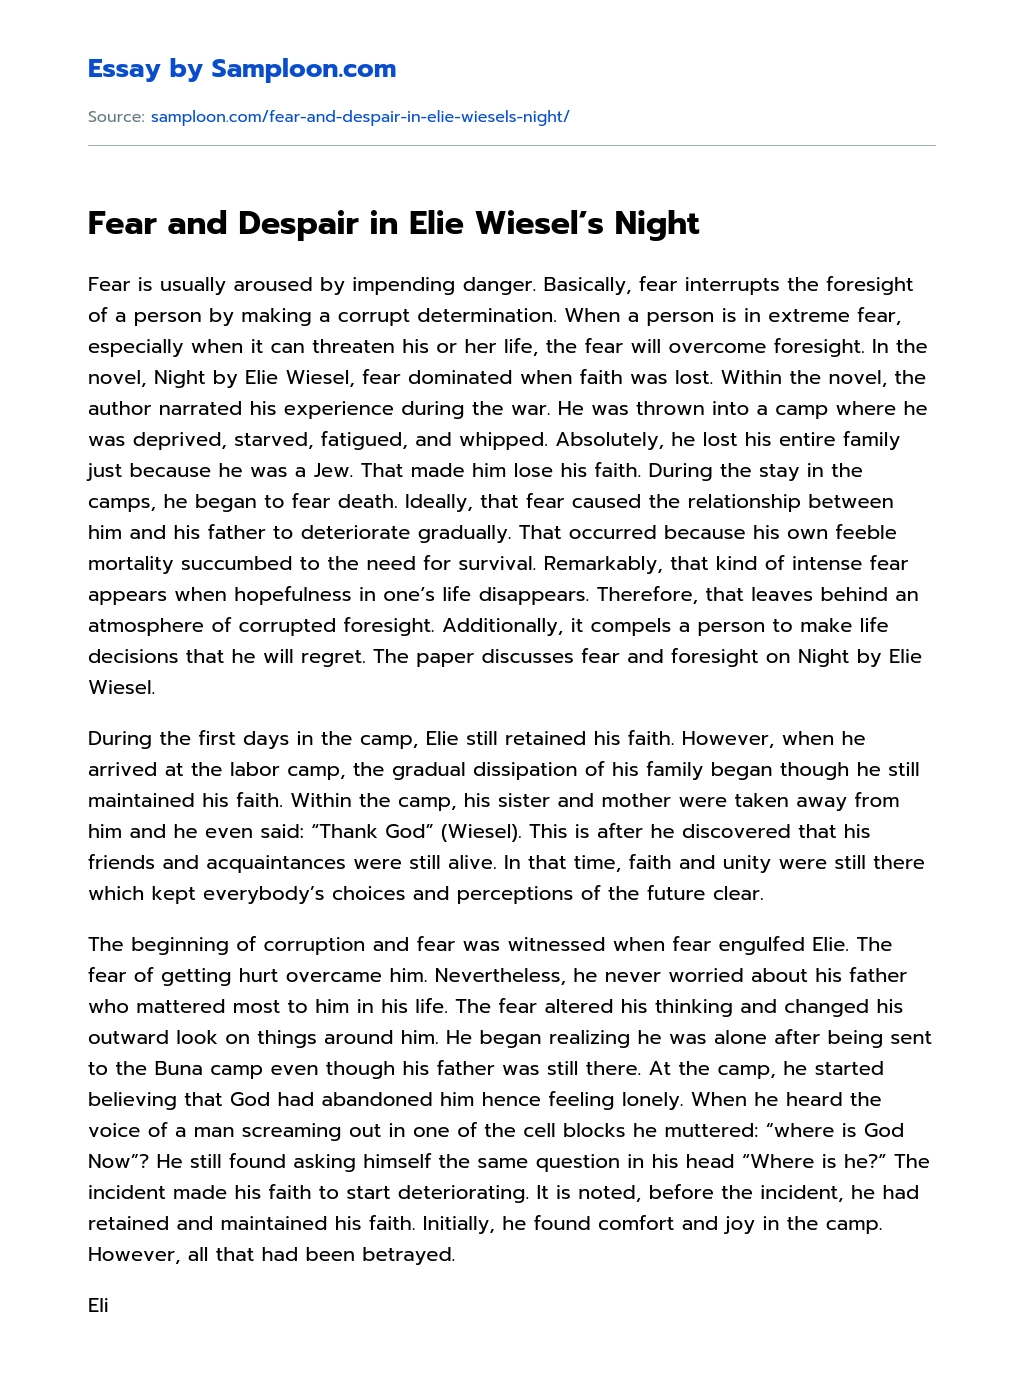 Fear and Despair in Elie Wiesel’s Night essay